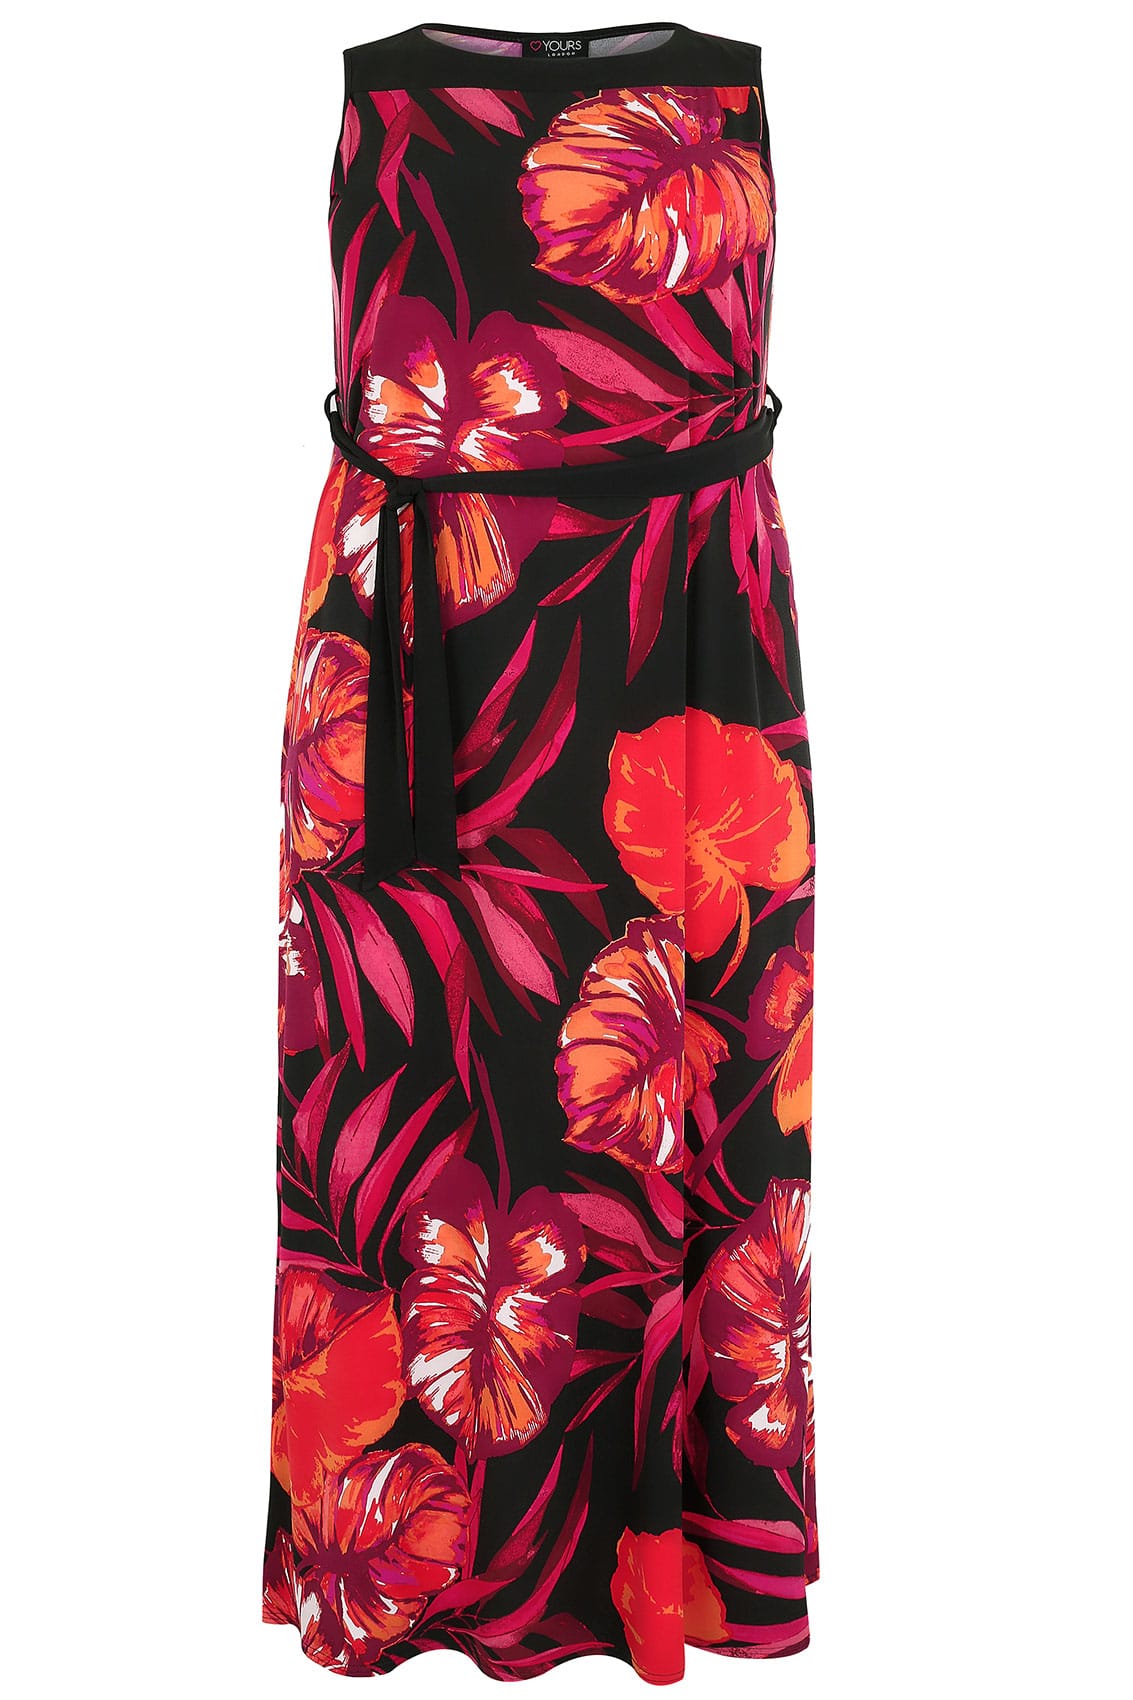 Orange & Black Sleeveless Floral Maxi Dress, Plus size 16 to 36